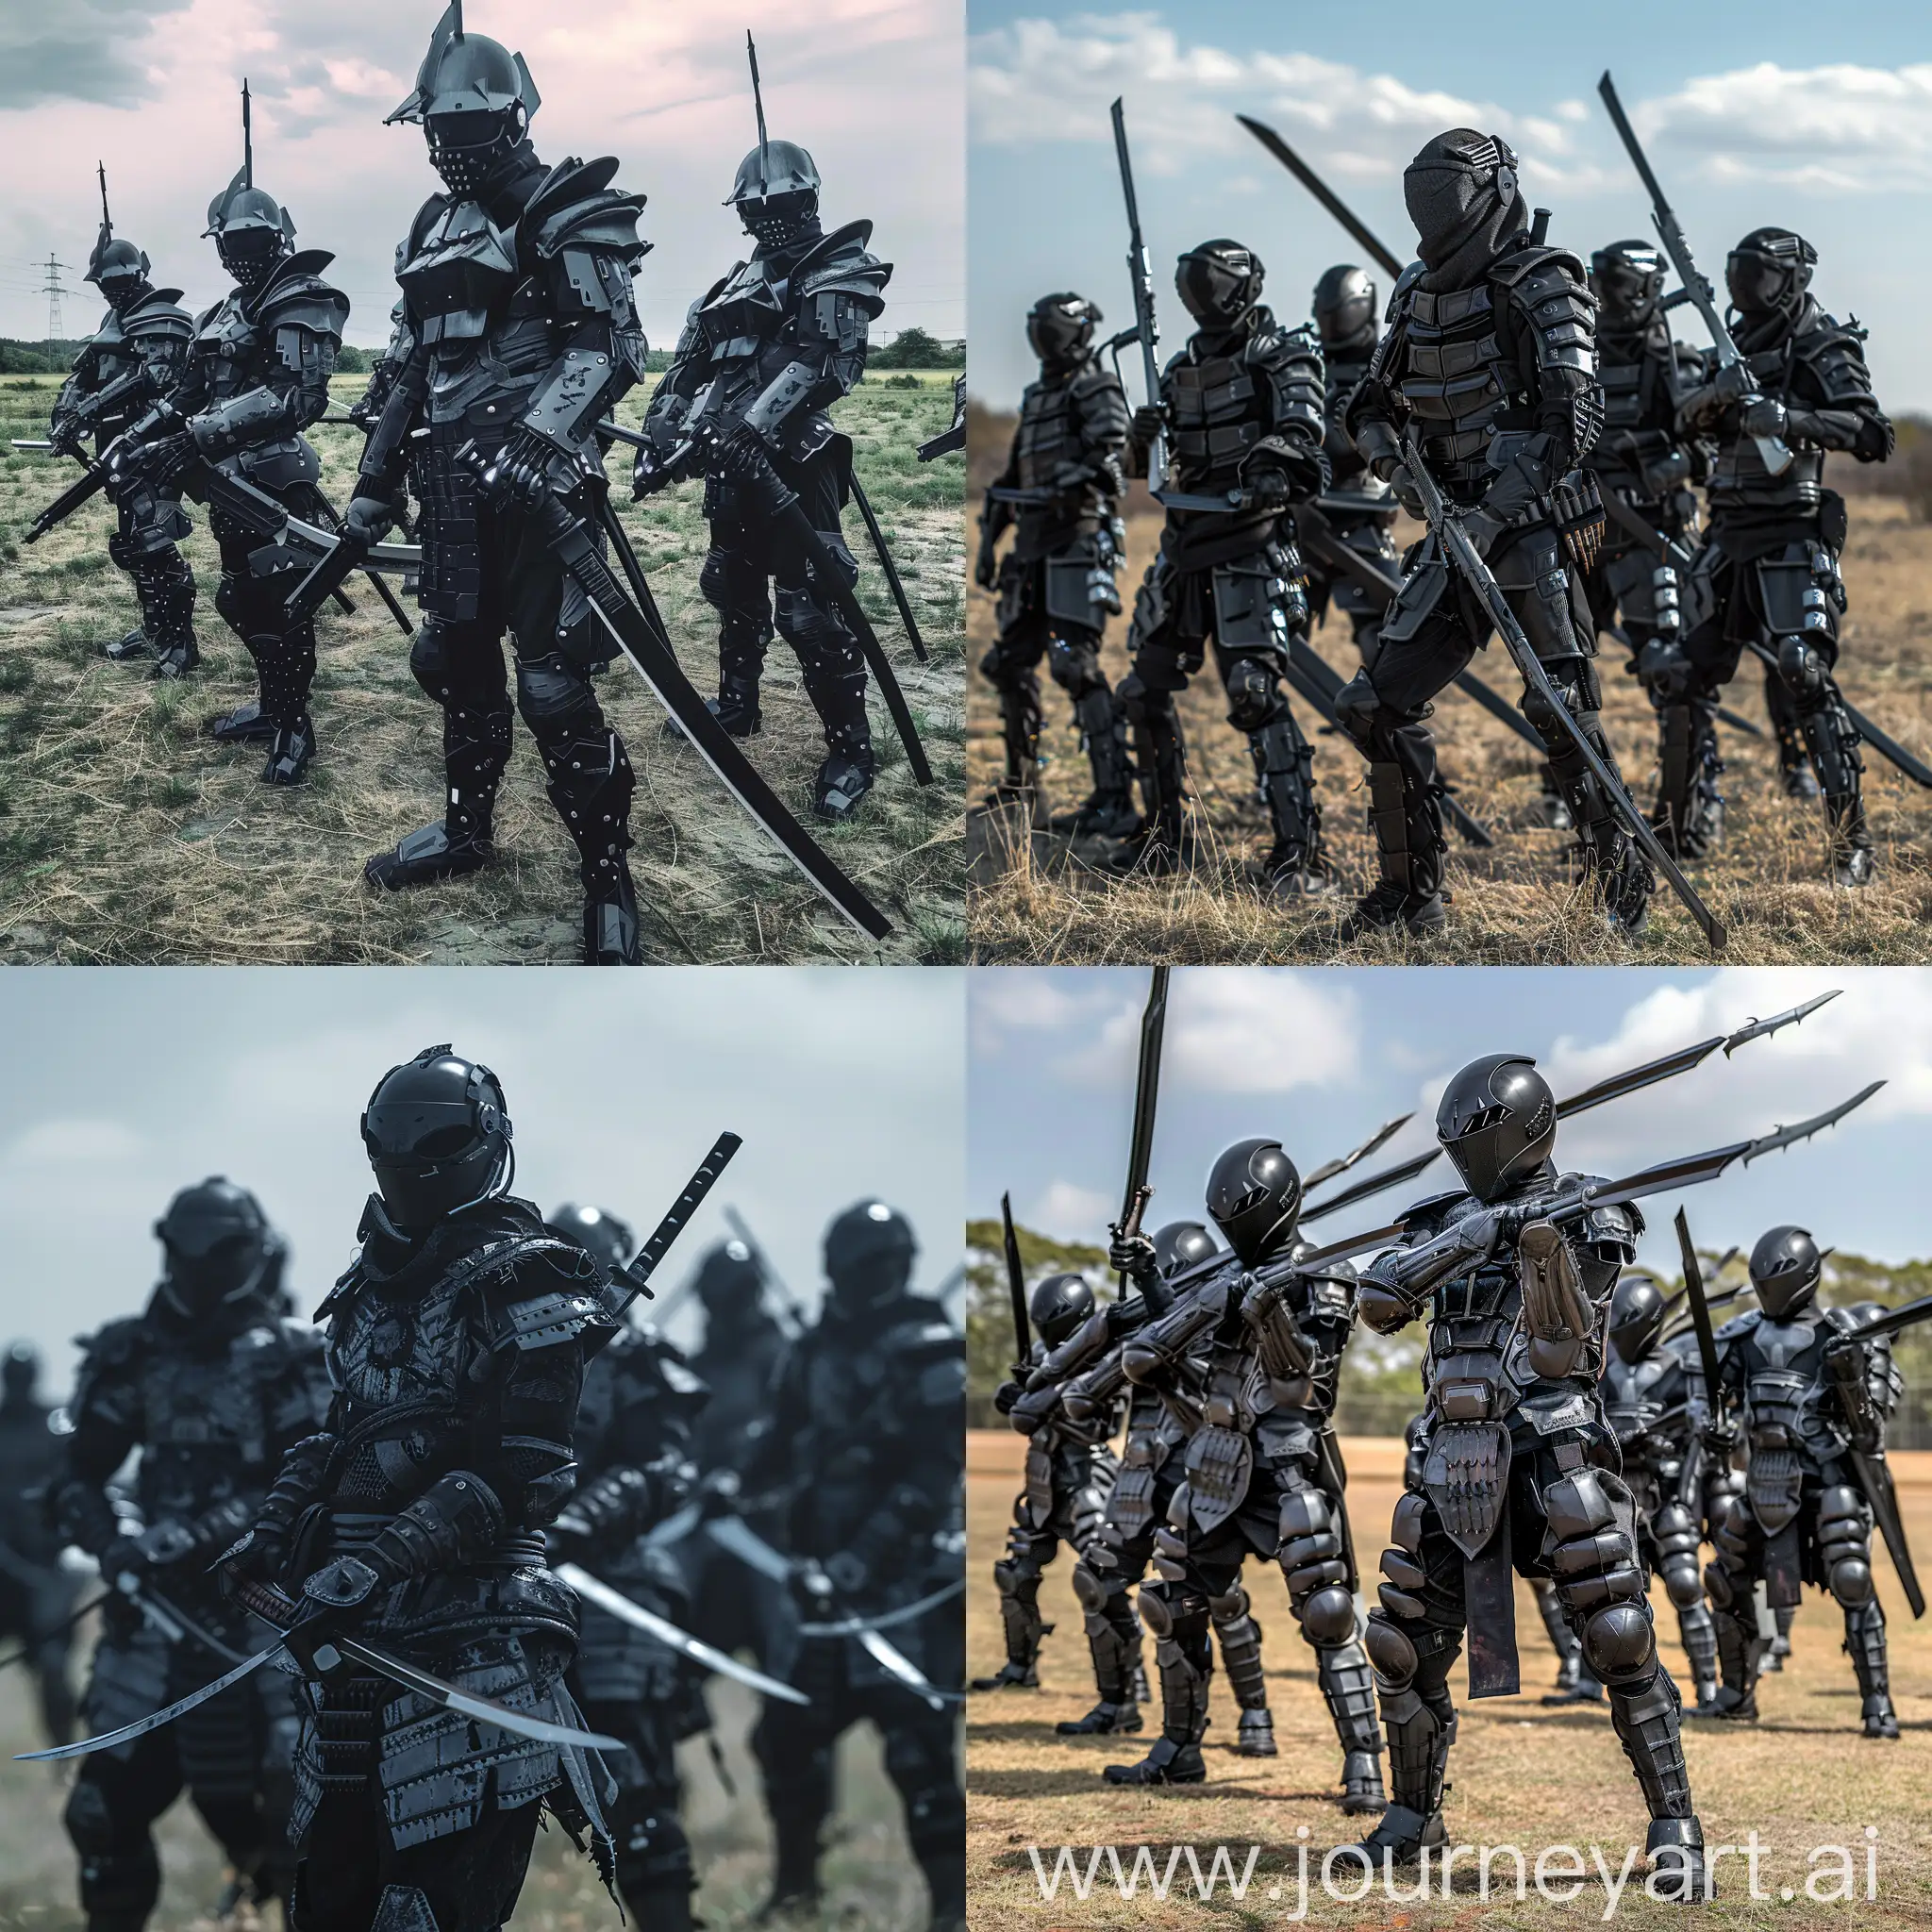 Futuristic-SwordWielding-Soldiers-in-Vigilant-Stance-on-Open-Field